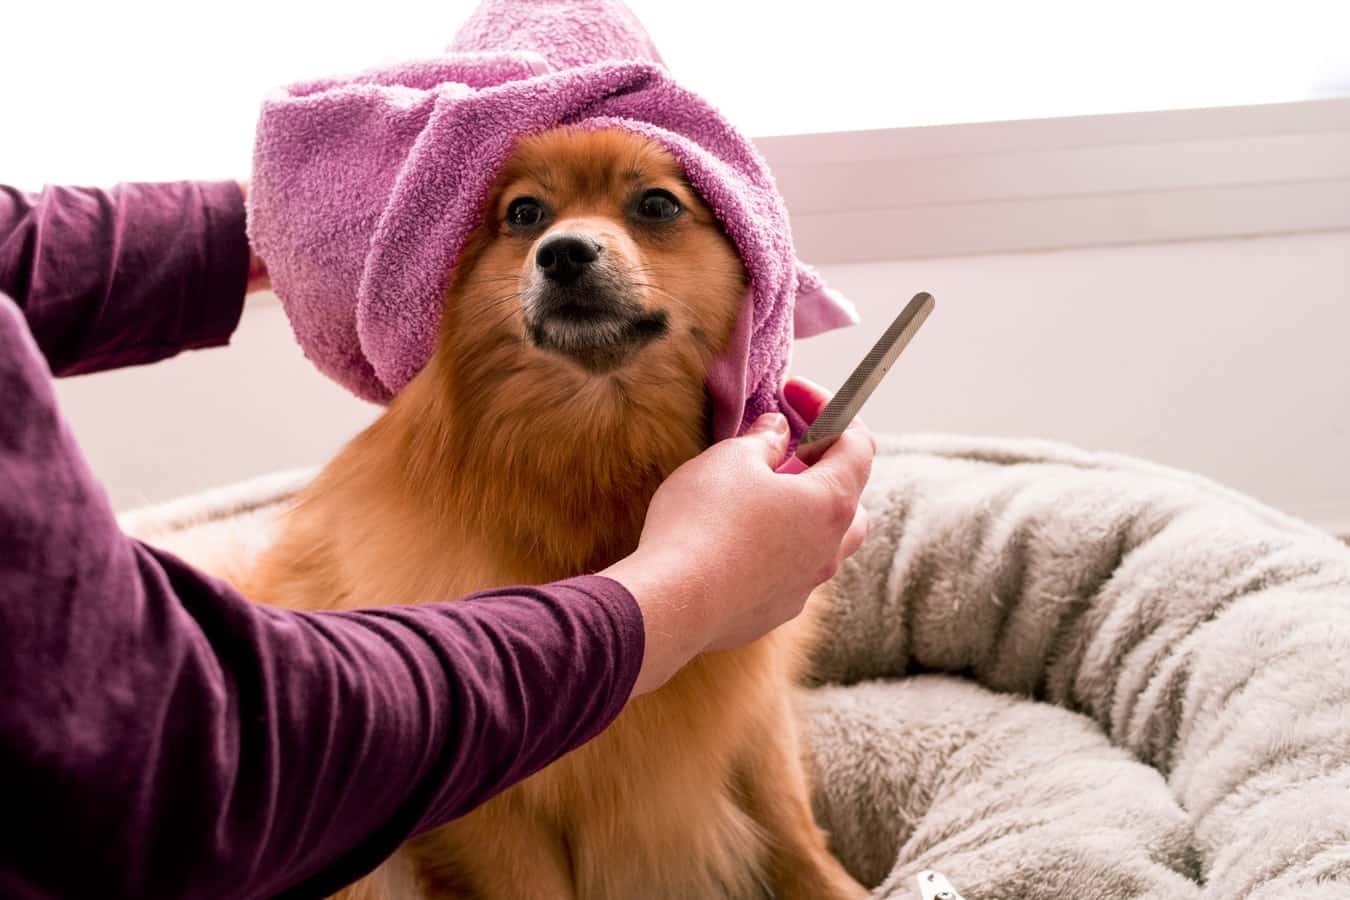 Dog getting groomed after shower